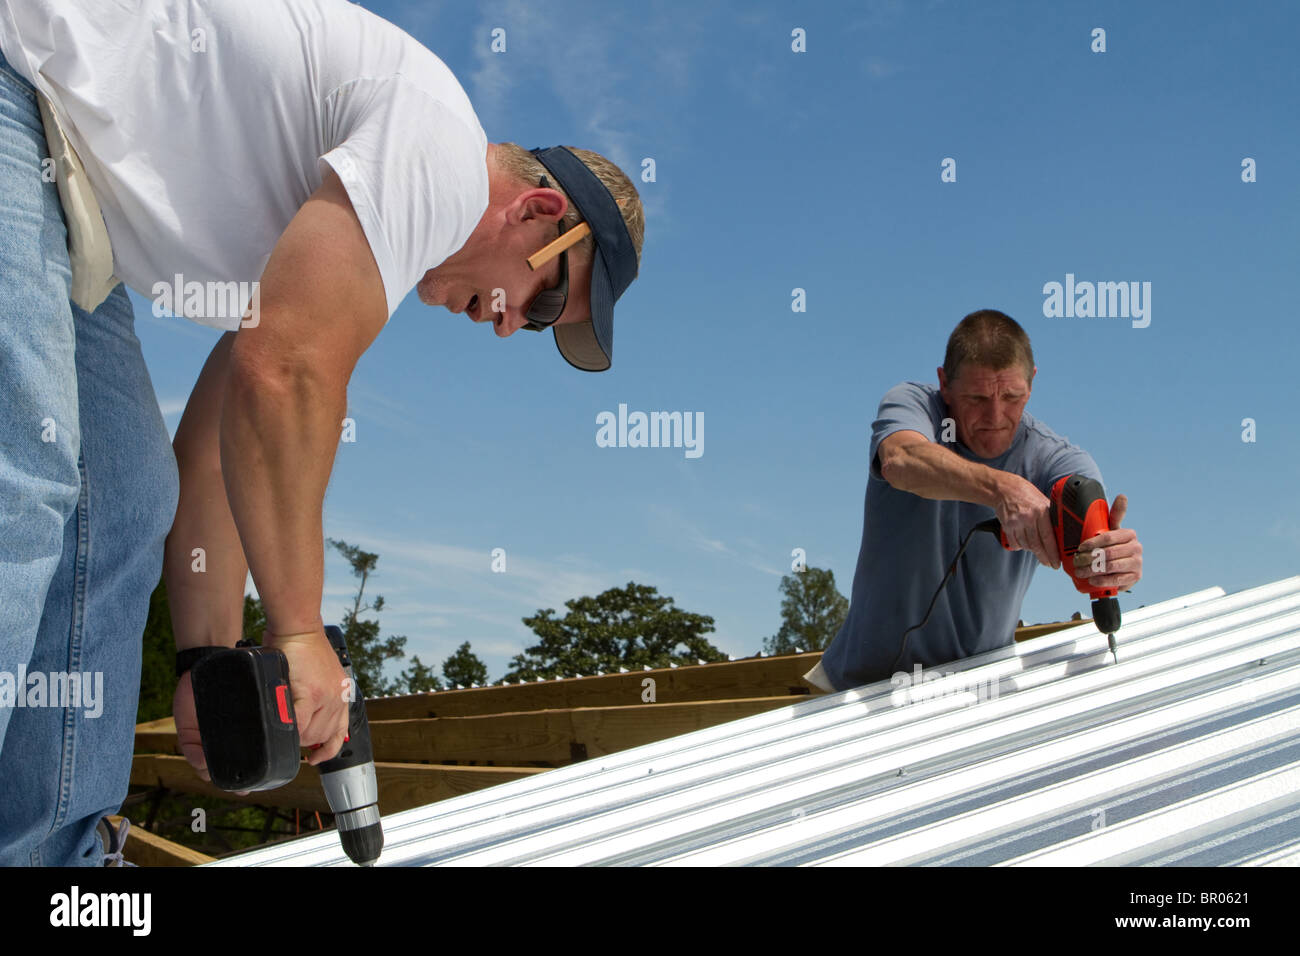 Équipe de construction utilise des outils électriques à vis et fixer la tôle pour les chevrons de toit d'un bâtiment. Banque D'Images